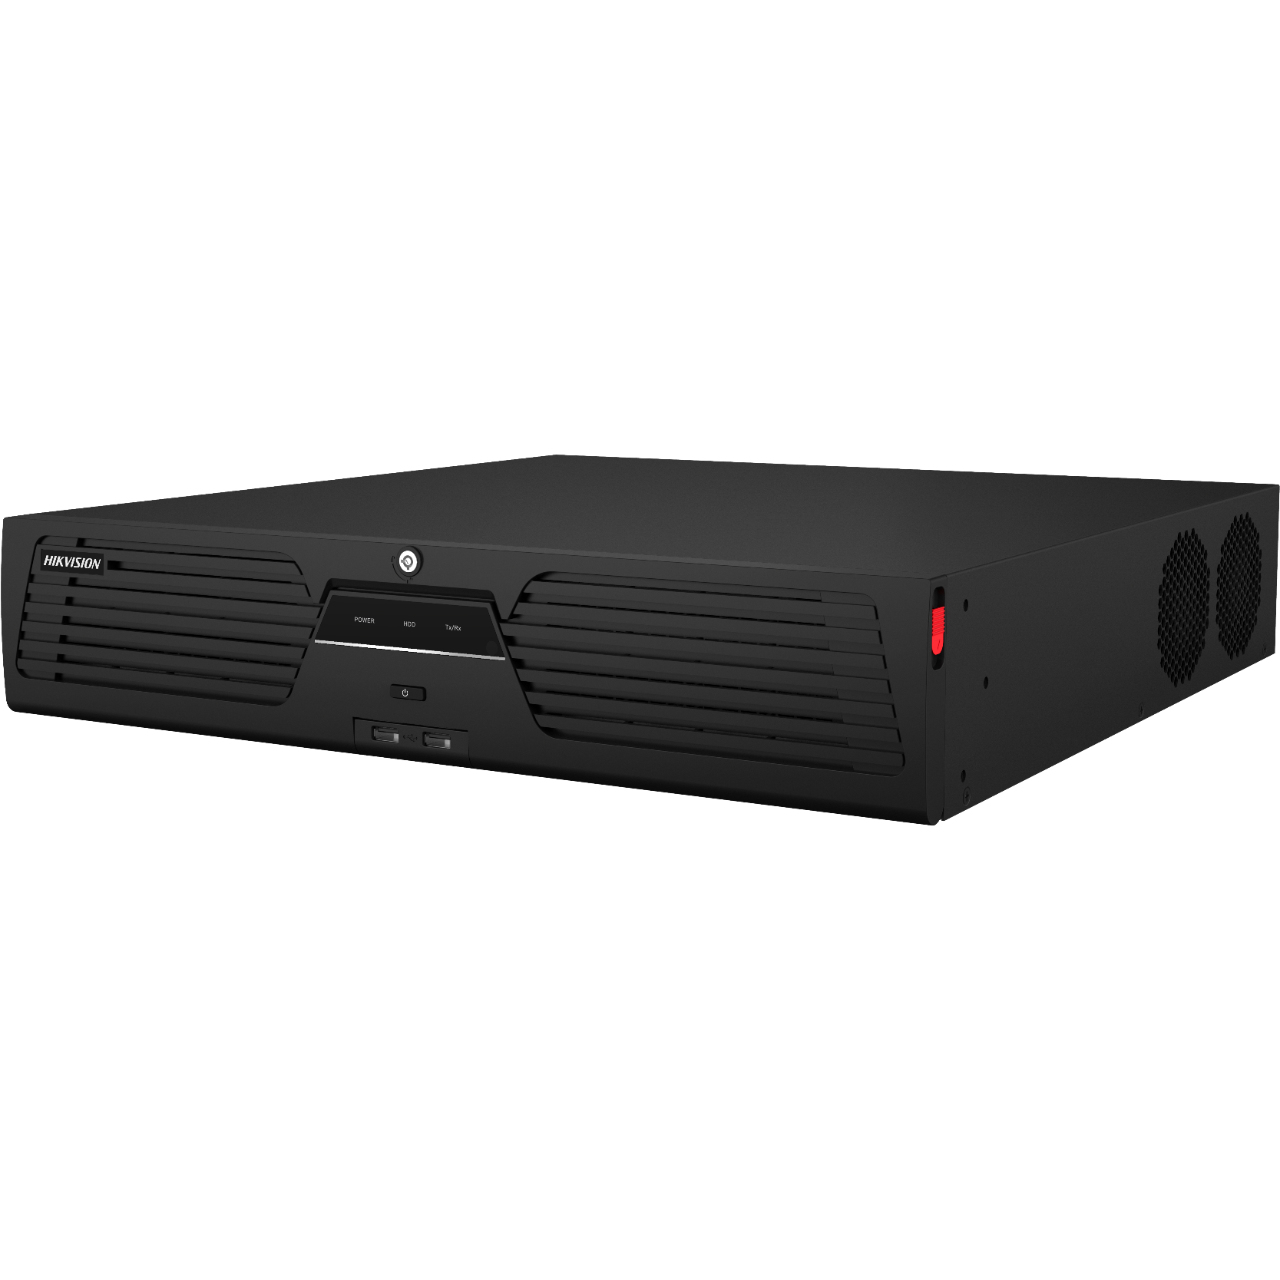 Hikvision  [Doble Poder de Decodificación] NVR 32 Megapixel (8K) / 32 Canales IP / AcuSense / ANPR / Conteo de Personas / Heat Map / 8 Bahías de Disco Duro / 2 Tarjetas de Red / Soporta RAID con Hot Swap / 2 HDMI en 8K / Soporta POS / Alarmas I/O